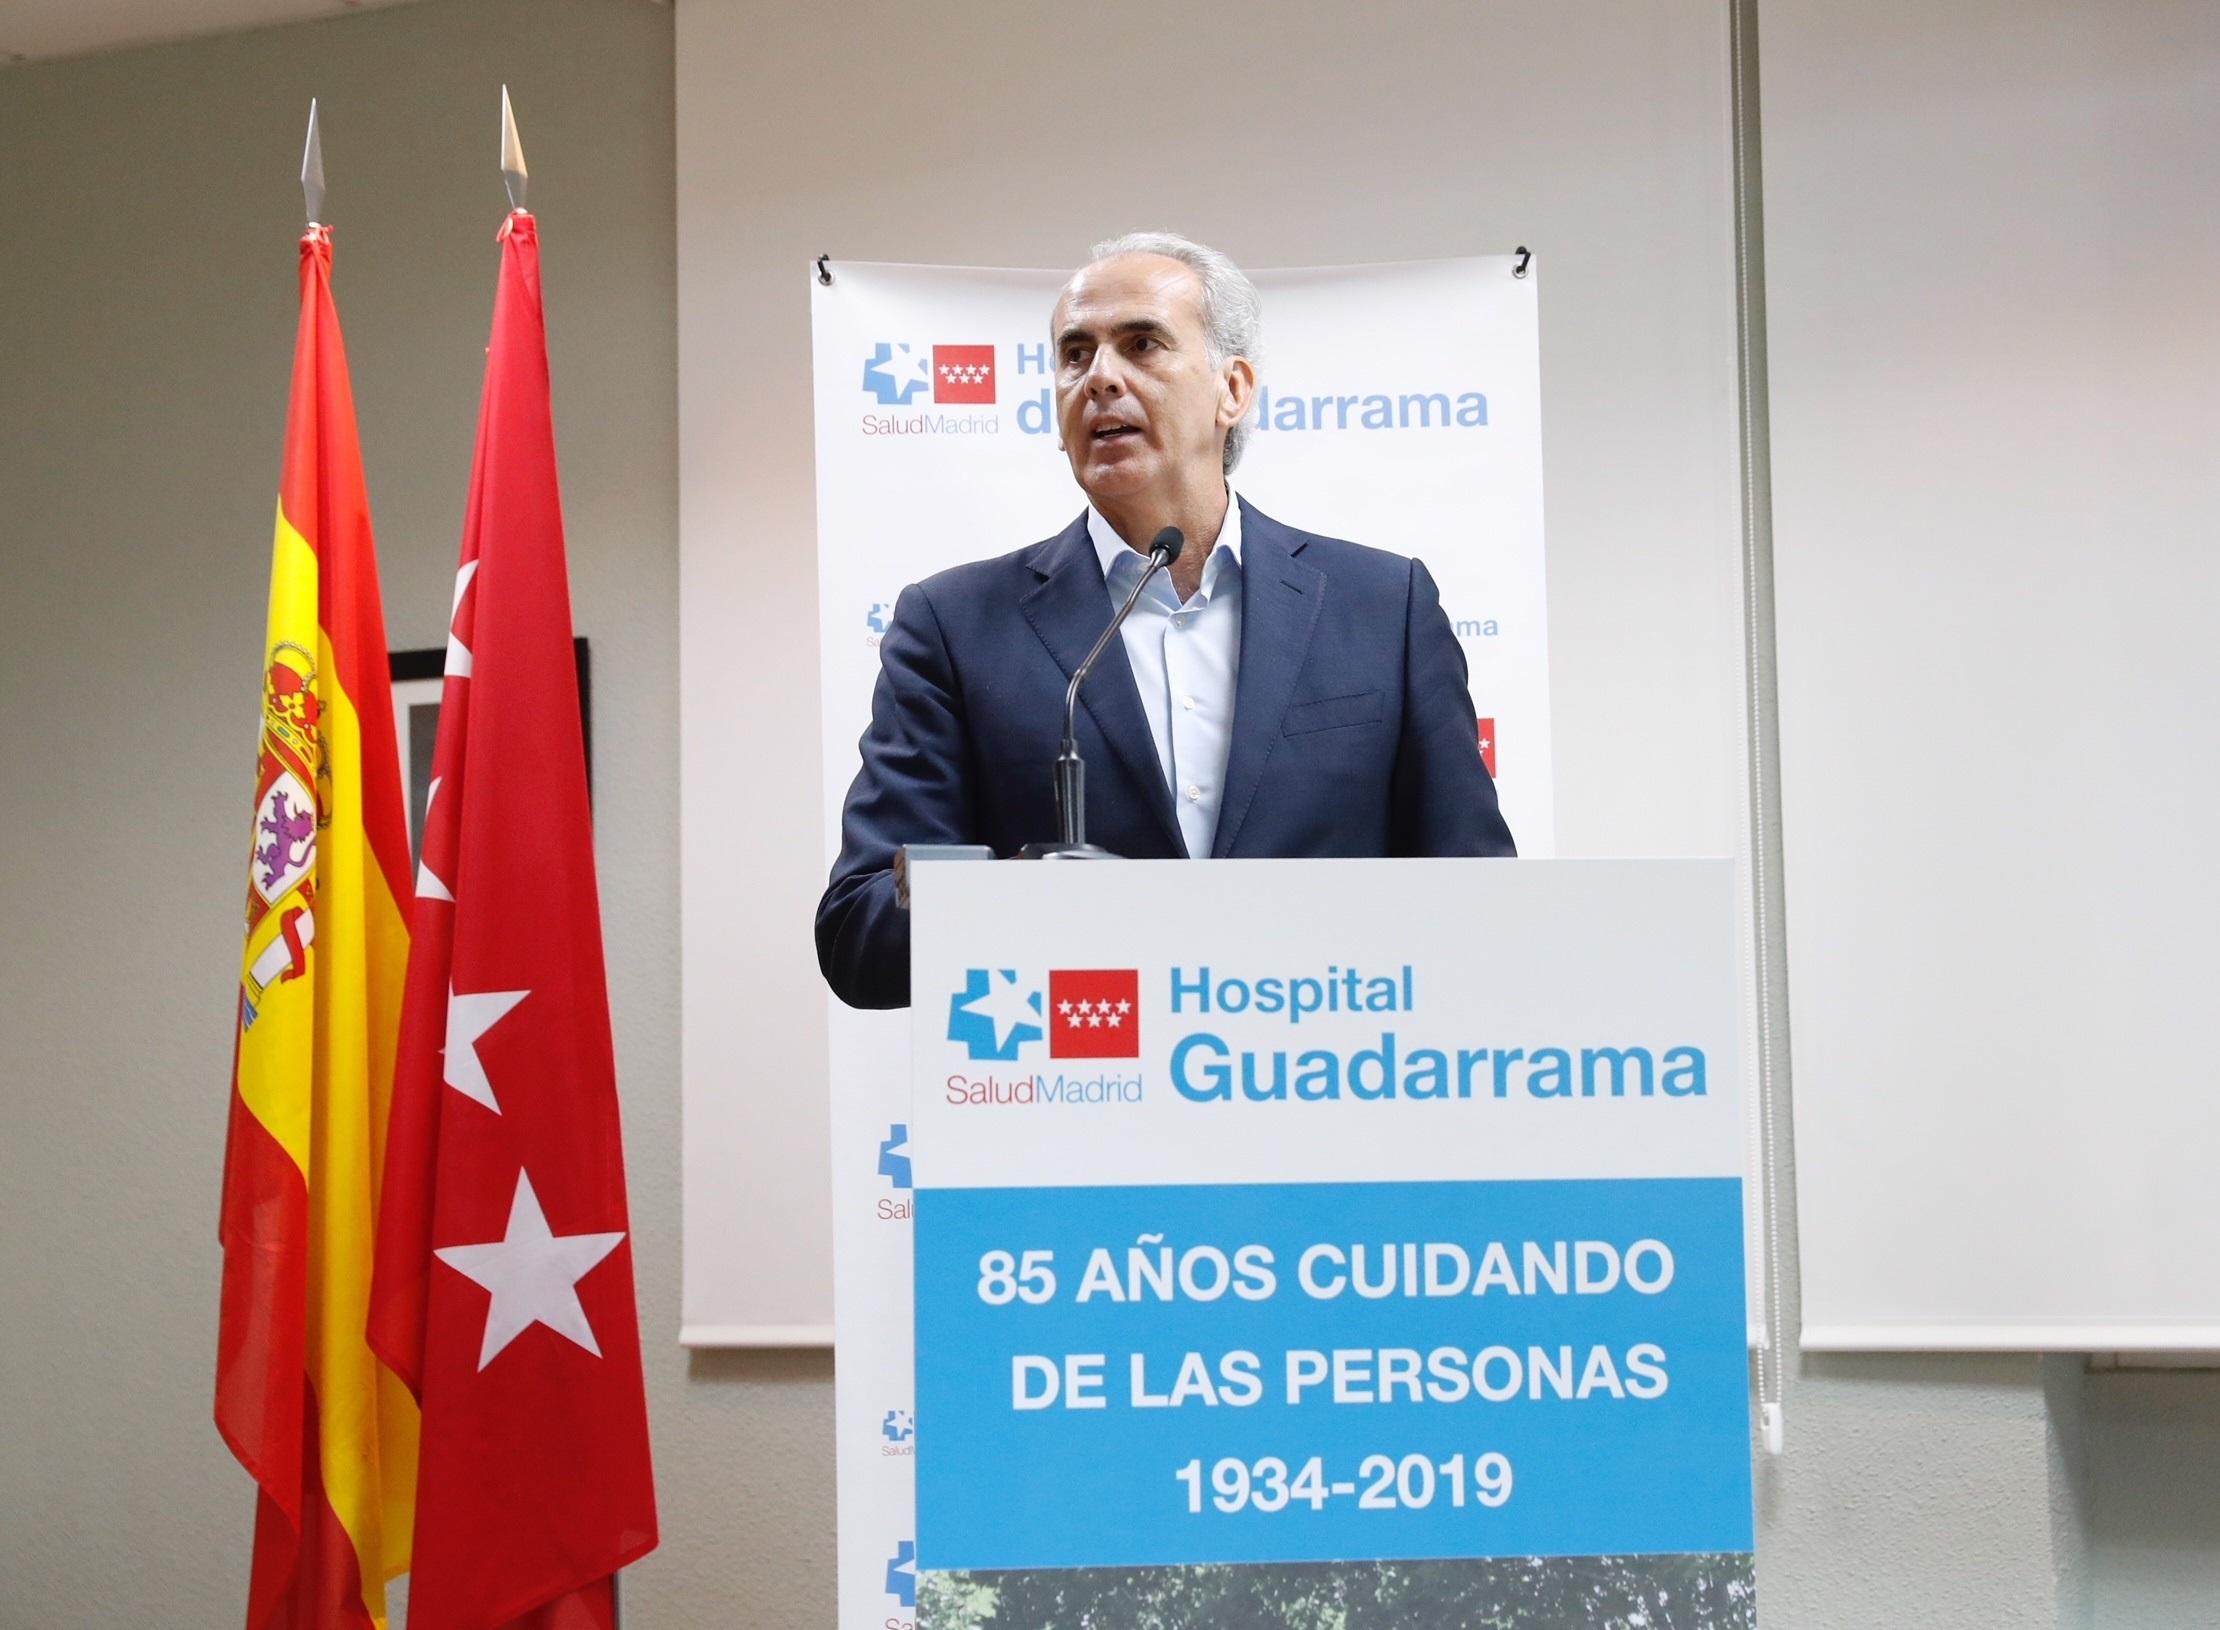 El consejero de Sanidad en funciones de la Comunidad de Madrid Enrique Ruiz Escudero participa en los actos de conmemoración de los 85 años de actividad del Hospital de Guadarrama